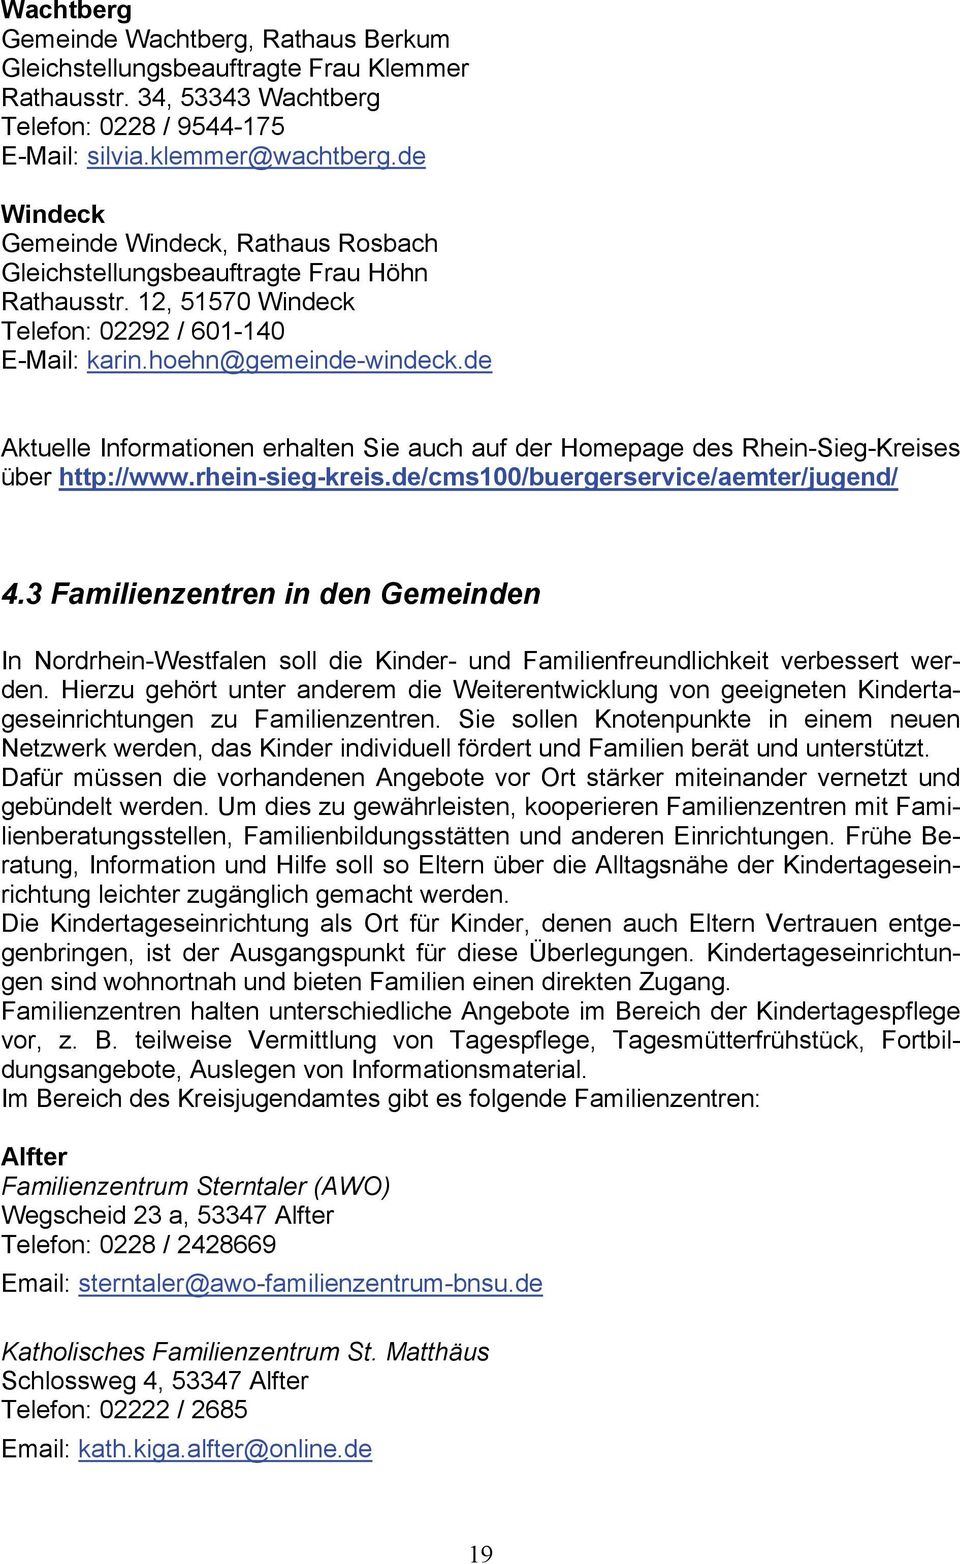 de Aktuelle Informationen erhalten Sie auch auf der Homepage des Rhein-Sieg-Kreises über http://www.rhein-sieg-kreis.de/cms100/buergerservice/aemter/jugend/ 4.